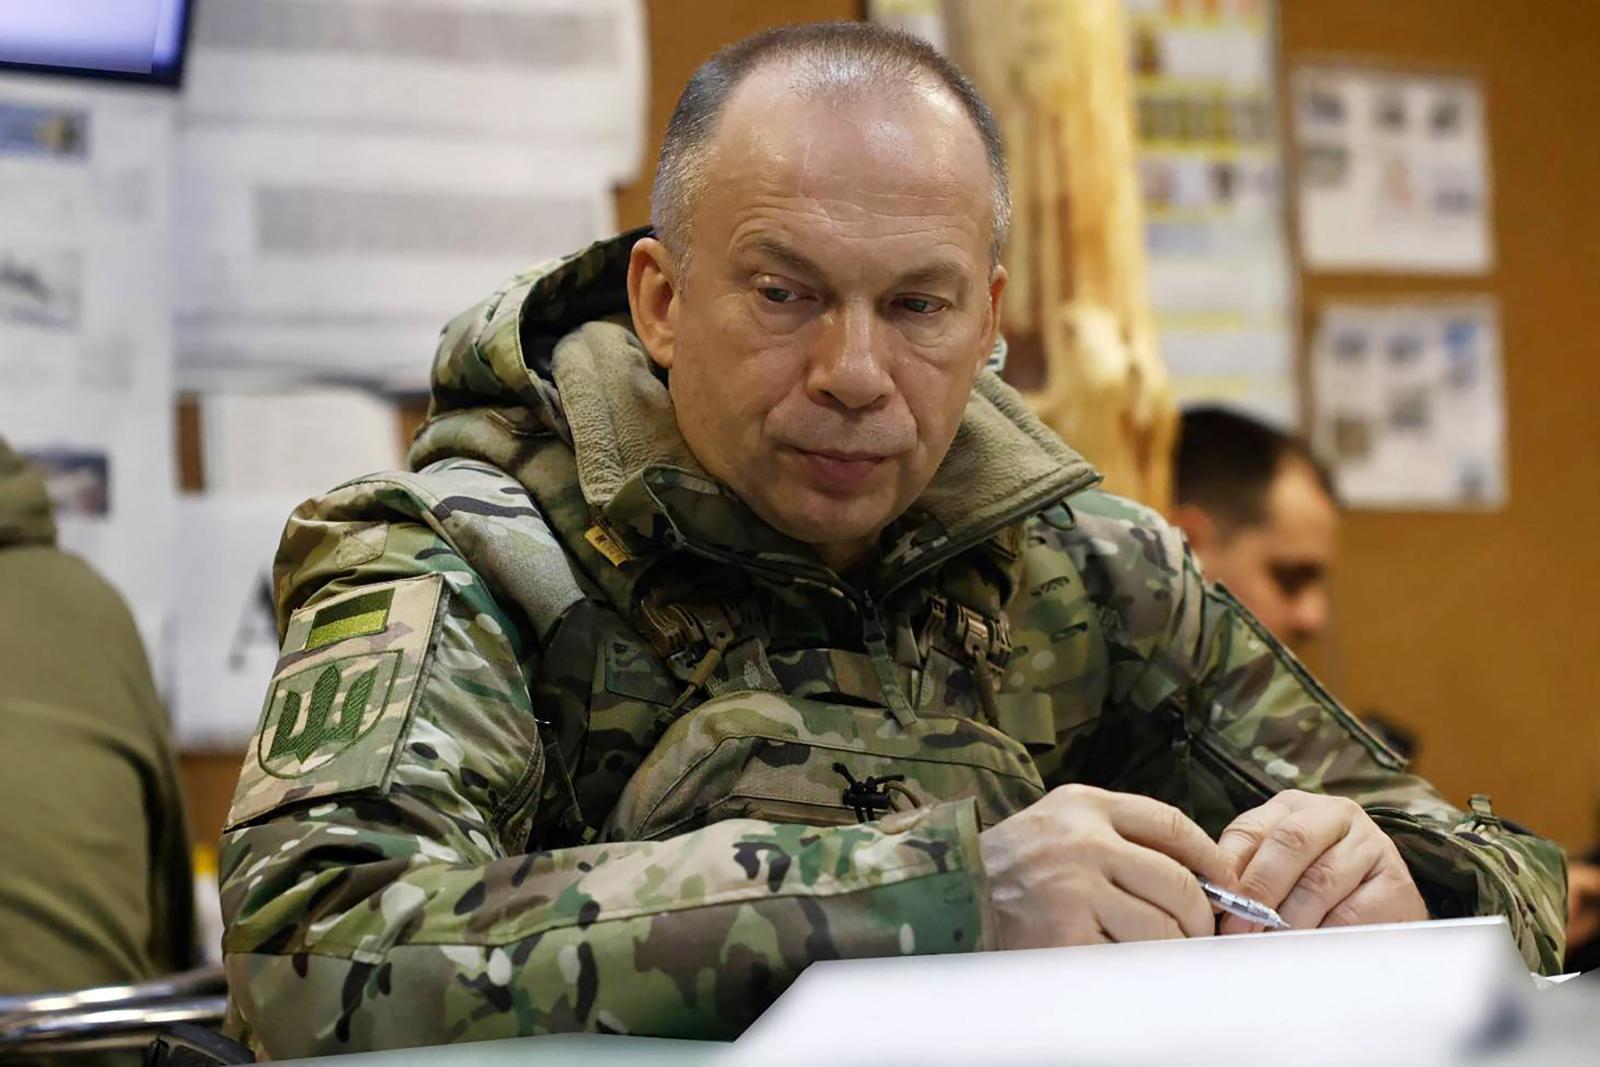 ผู้นำกองทัพยูเครนรับ สถานการณ์สู้รบแนวหน้าย่ำแย่ลงเรื่อย ๆ